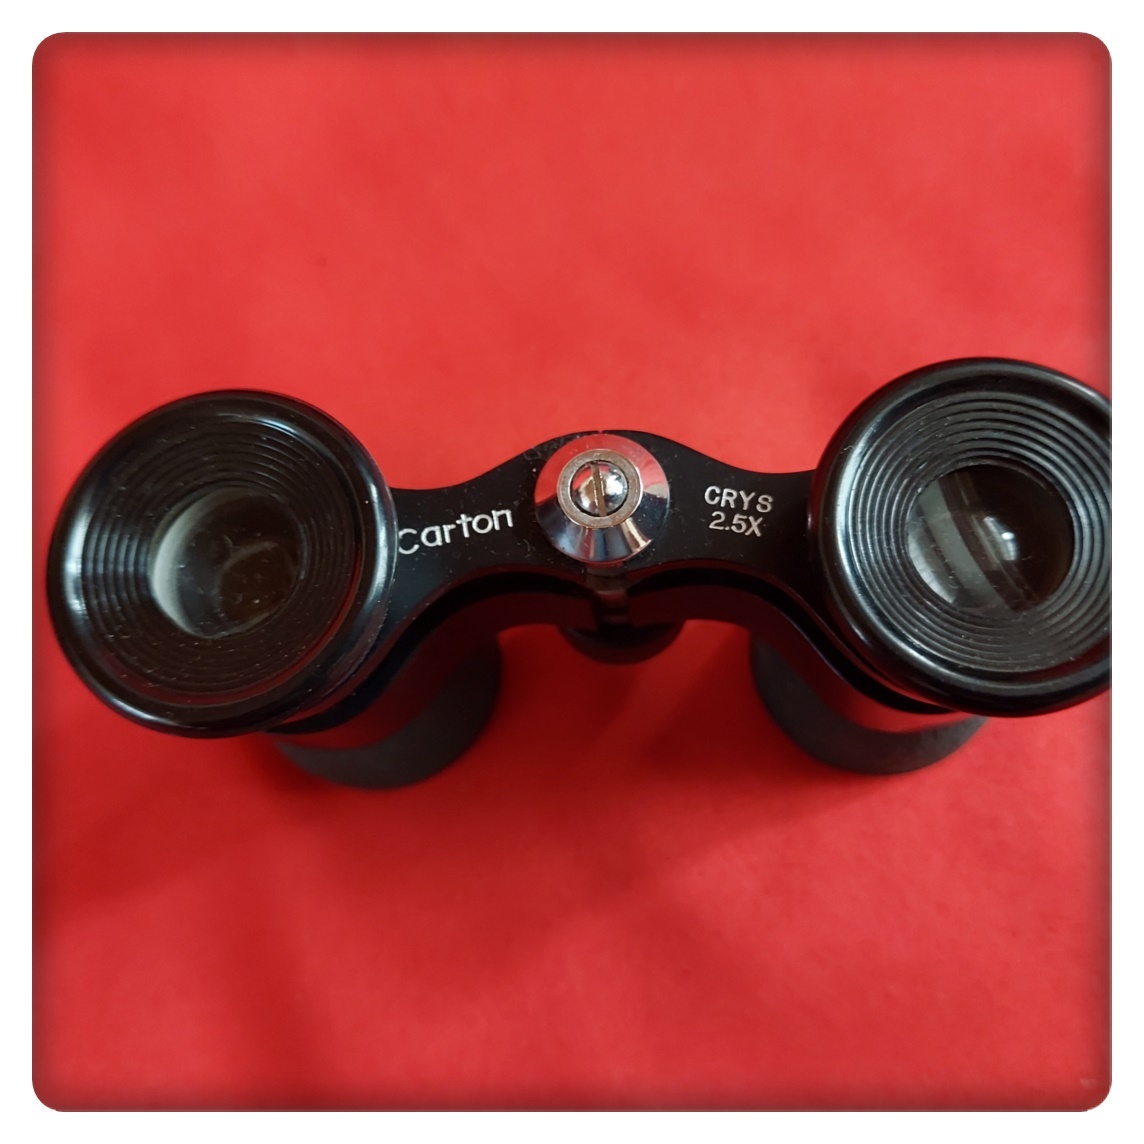  （ポ）双眼鏡 BINOCULARS Super Star 12×50 /Carton CRYS 2.5X 双眼鏡 中古2個セット ケース入り 現状品の画像4